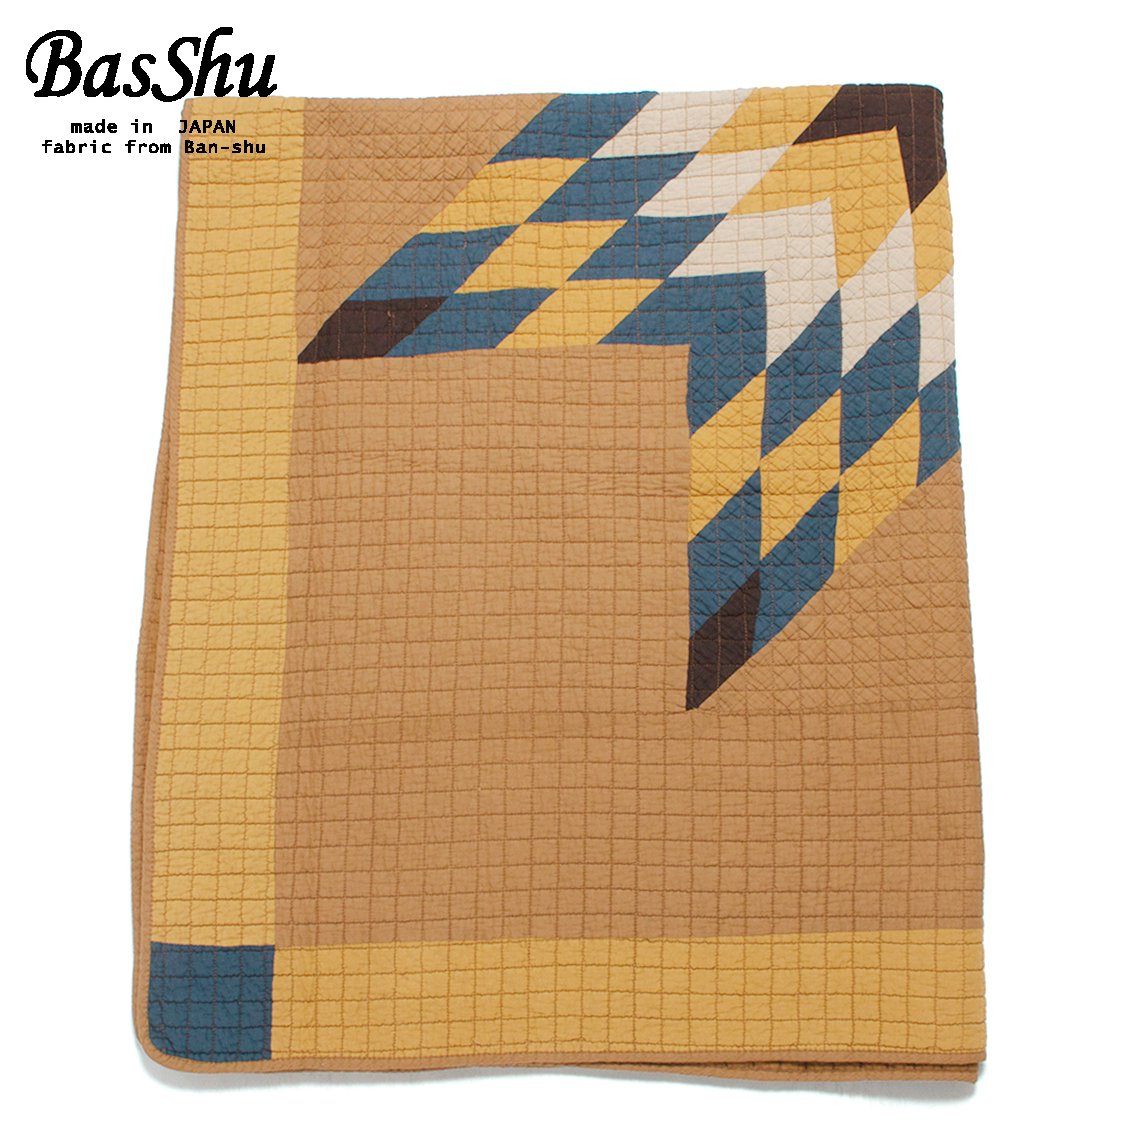 BasShu / バッシュ] Patchwork Quilt Cover パッチワーク キルトカバー